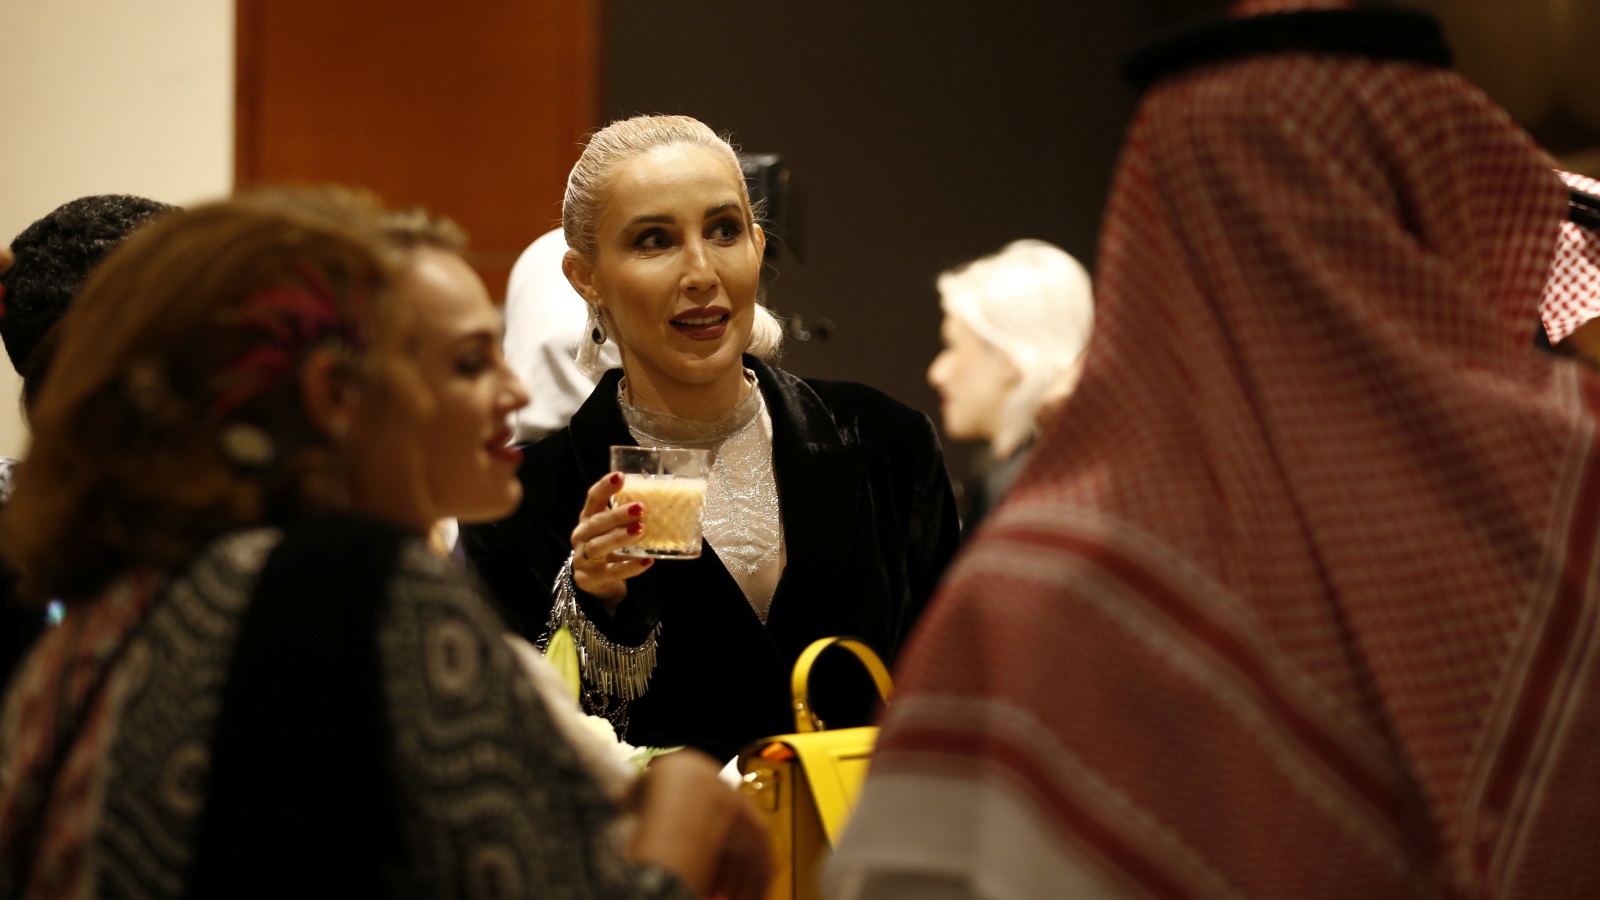 ‪الحدث الخاص بالأزياء في الرياض يشهد مشاركة مئات من خارج المملكة (رويترز)‬ الحدث الخاص بالأزياء في الرياض يشهد مشاركة مئات من خارج المملكة (رويترز)